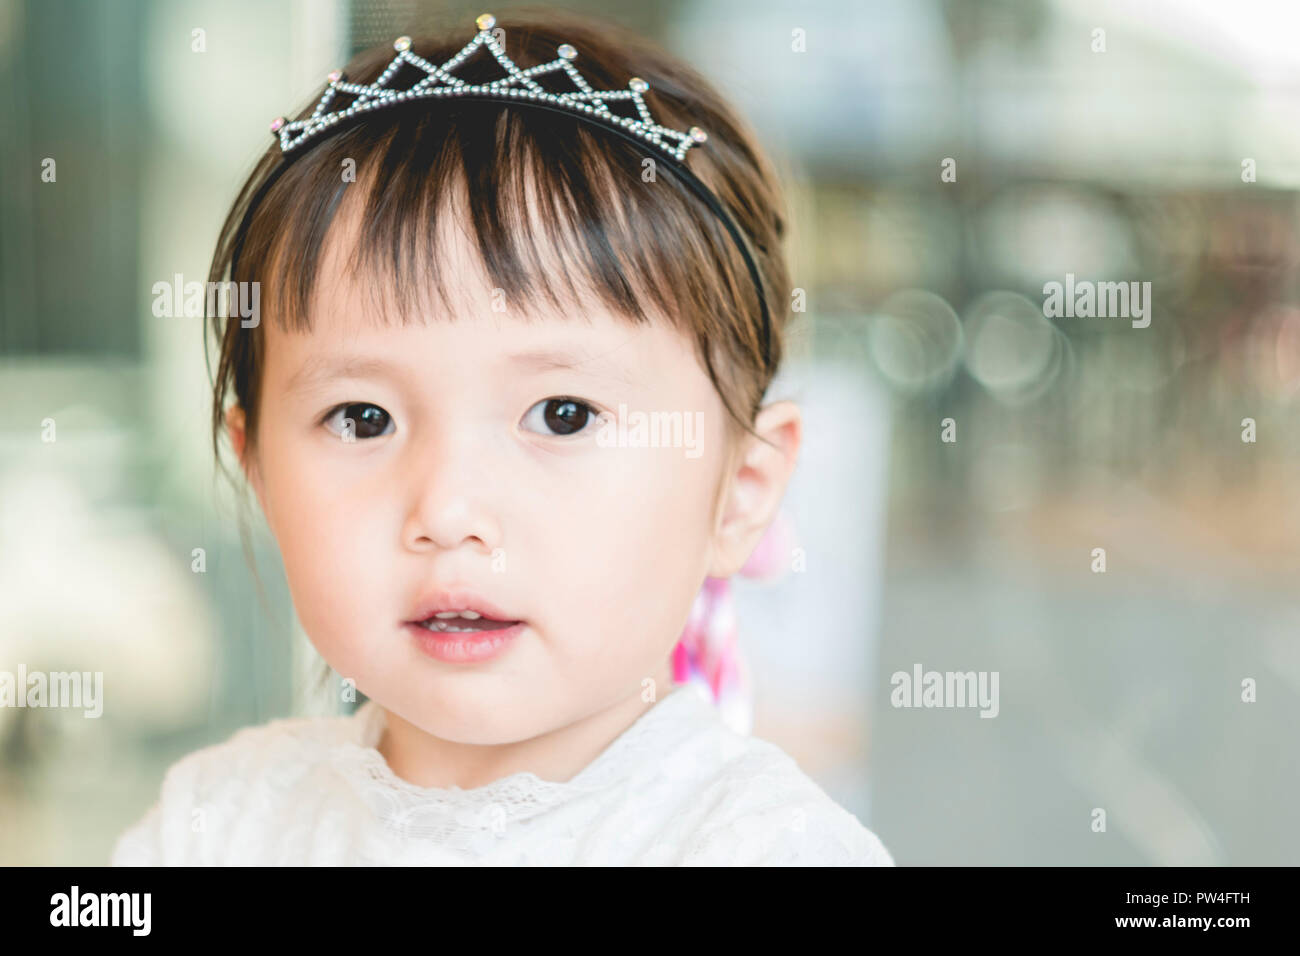 Bambina divertente volto sorridente,ritratto di gioiosa bambino asiatico adorabili bella guardando la fotocamera con un sorriso Foto Stock